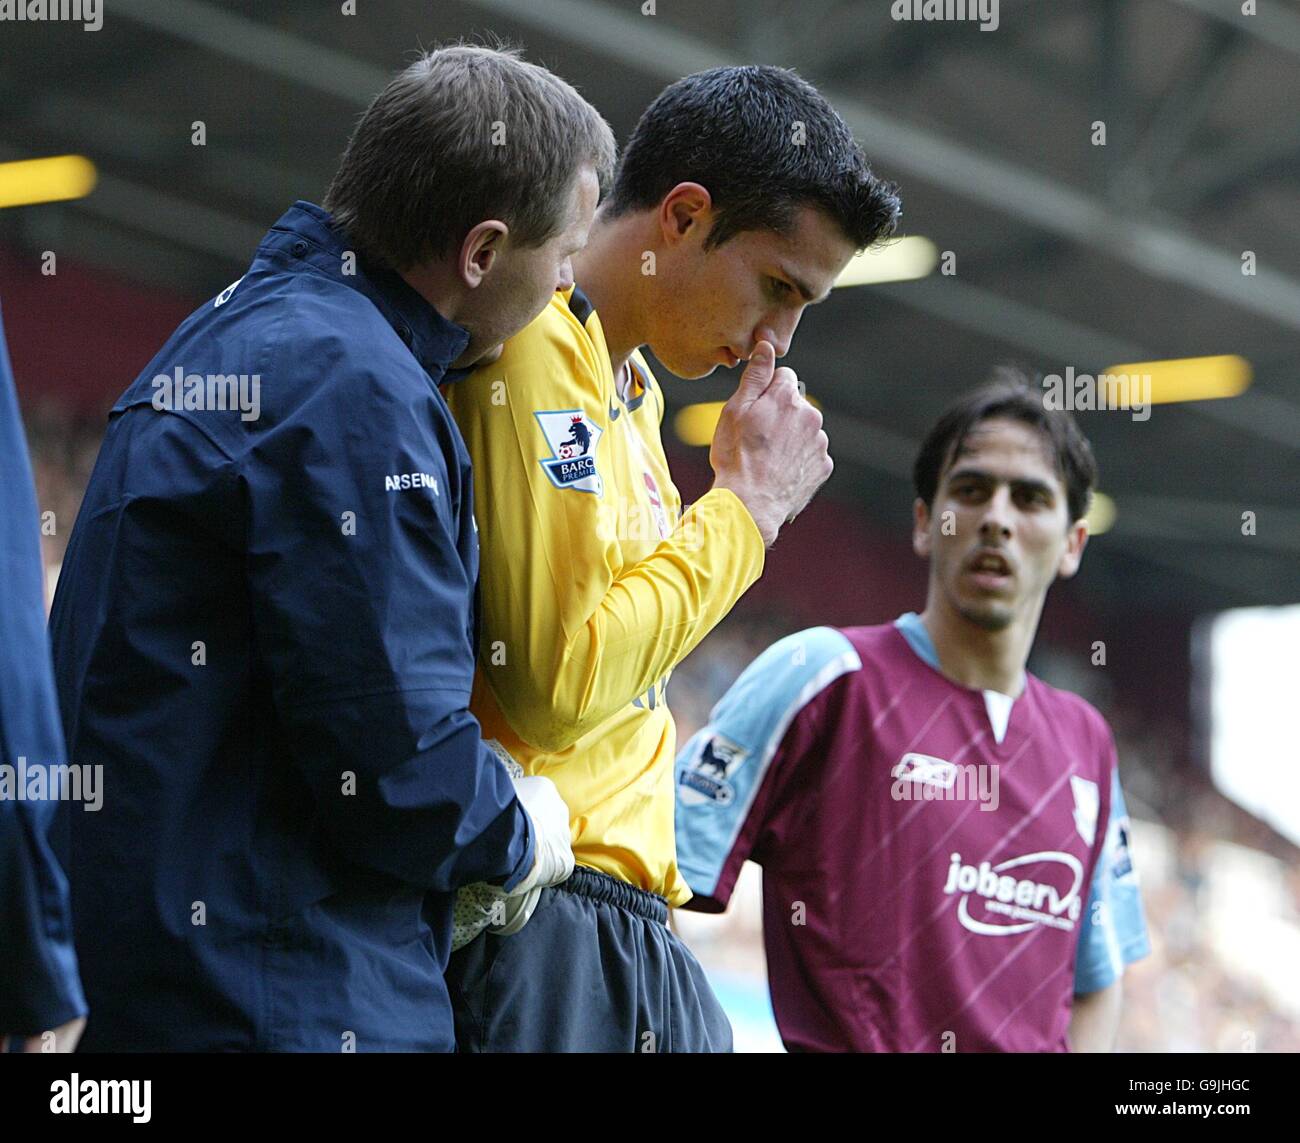 Fútbol - Fa Barclays Premiership - West Ham United contra Arsenal - Upton Park. Robin Van Persie, del Arsenal, se encuentra herido tras ser golpeado por un objeto de la multitud Foto de stock